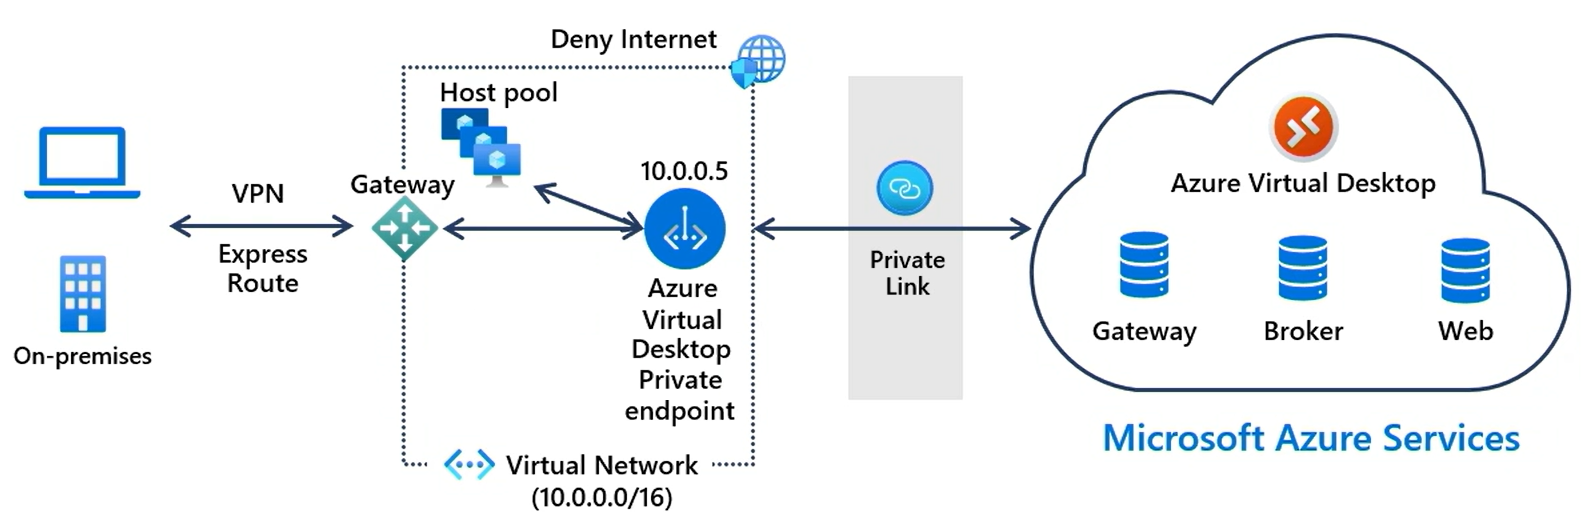 Egy magas szintű diagram, amely azt mutatja be, hogy a Private Link egy helyi ügyfelet csatlakoztat az Azure Virtual Desktop szolgáltatáshoz.